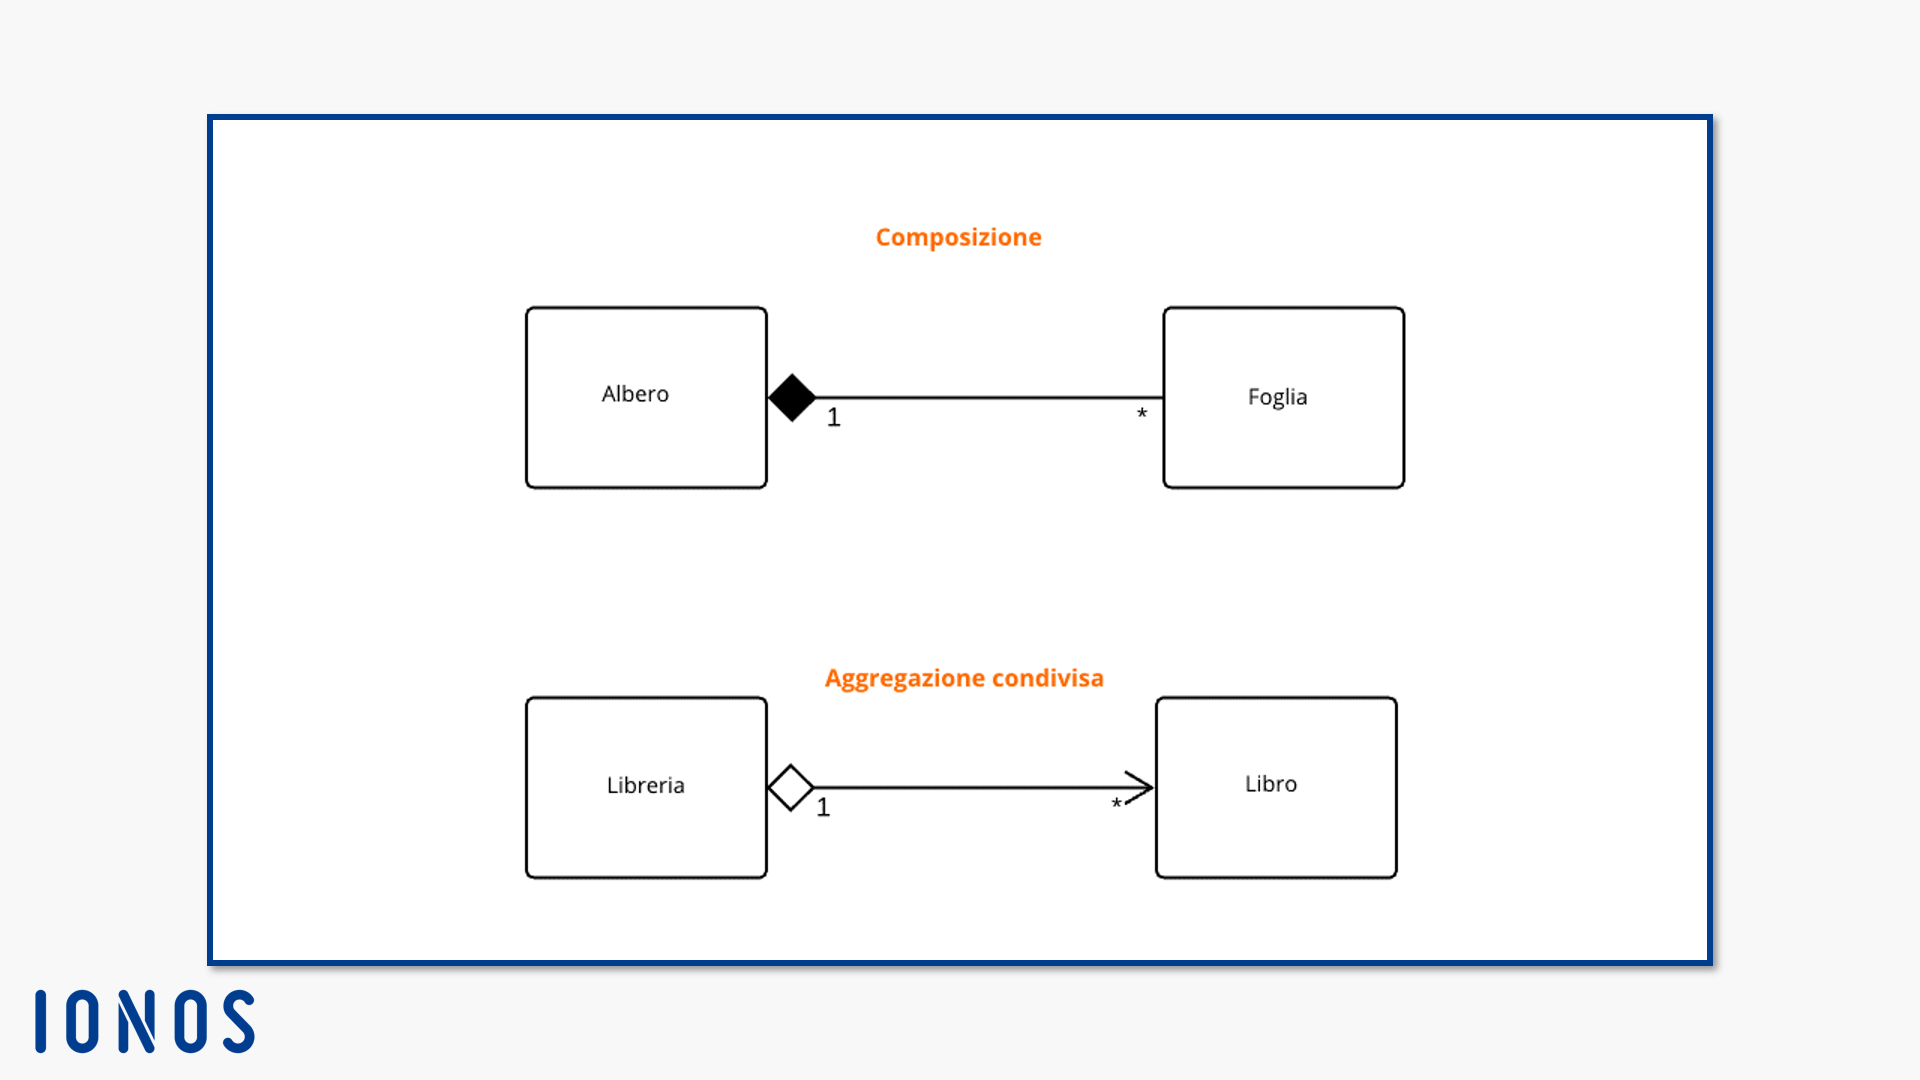 Notazione UML per la composizione e l’aggregazione condivisa